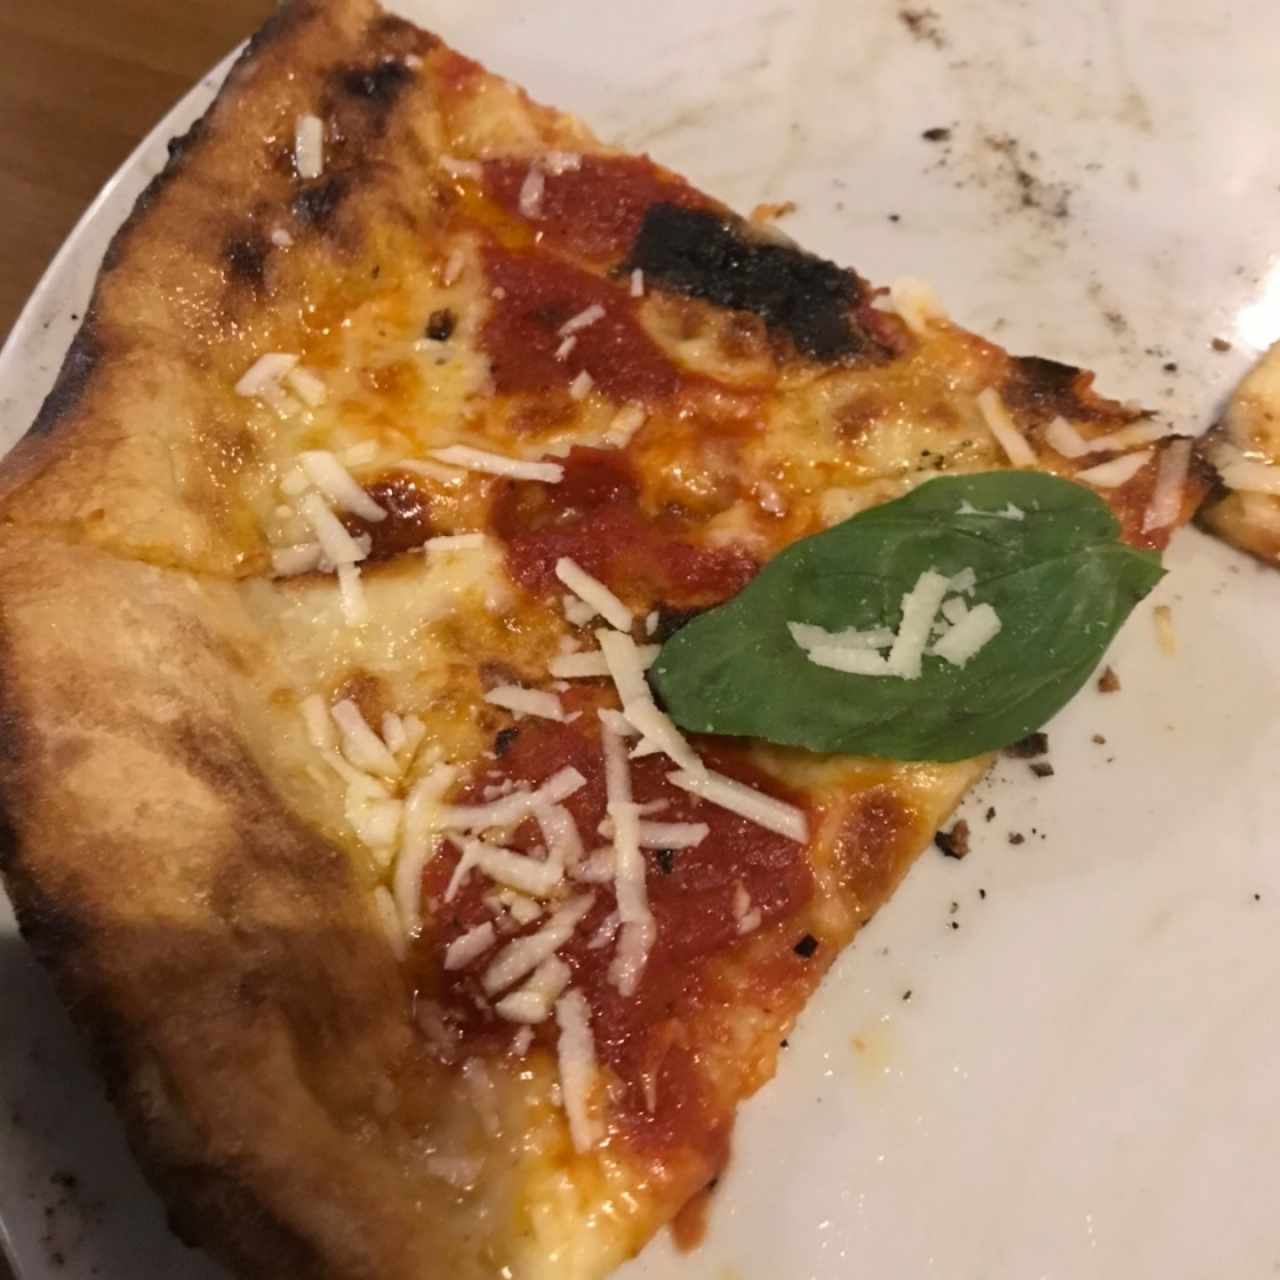 Pizza Arrabiata